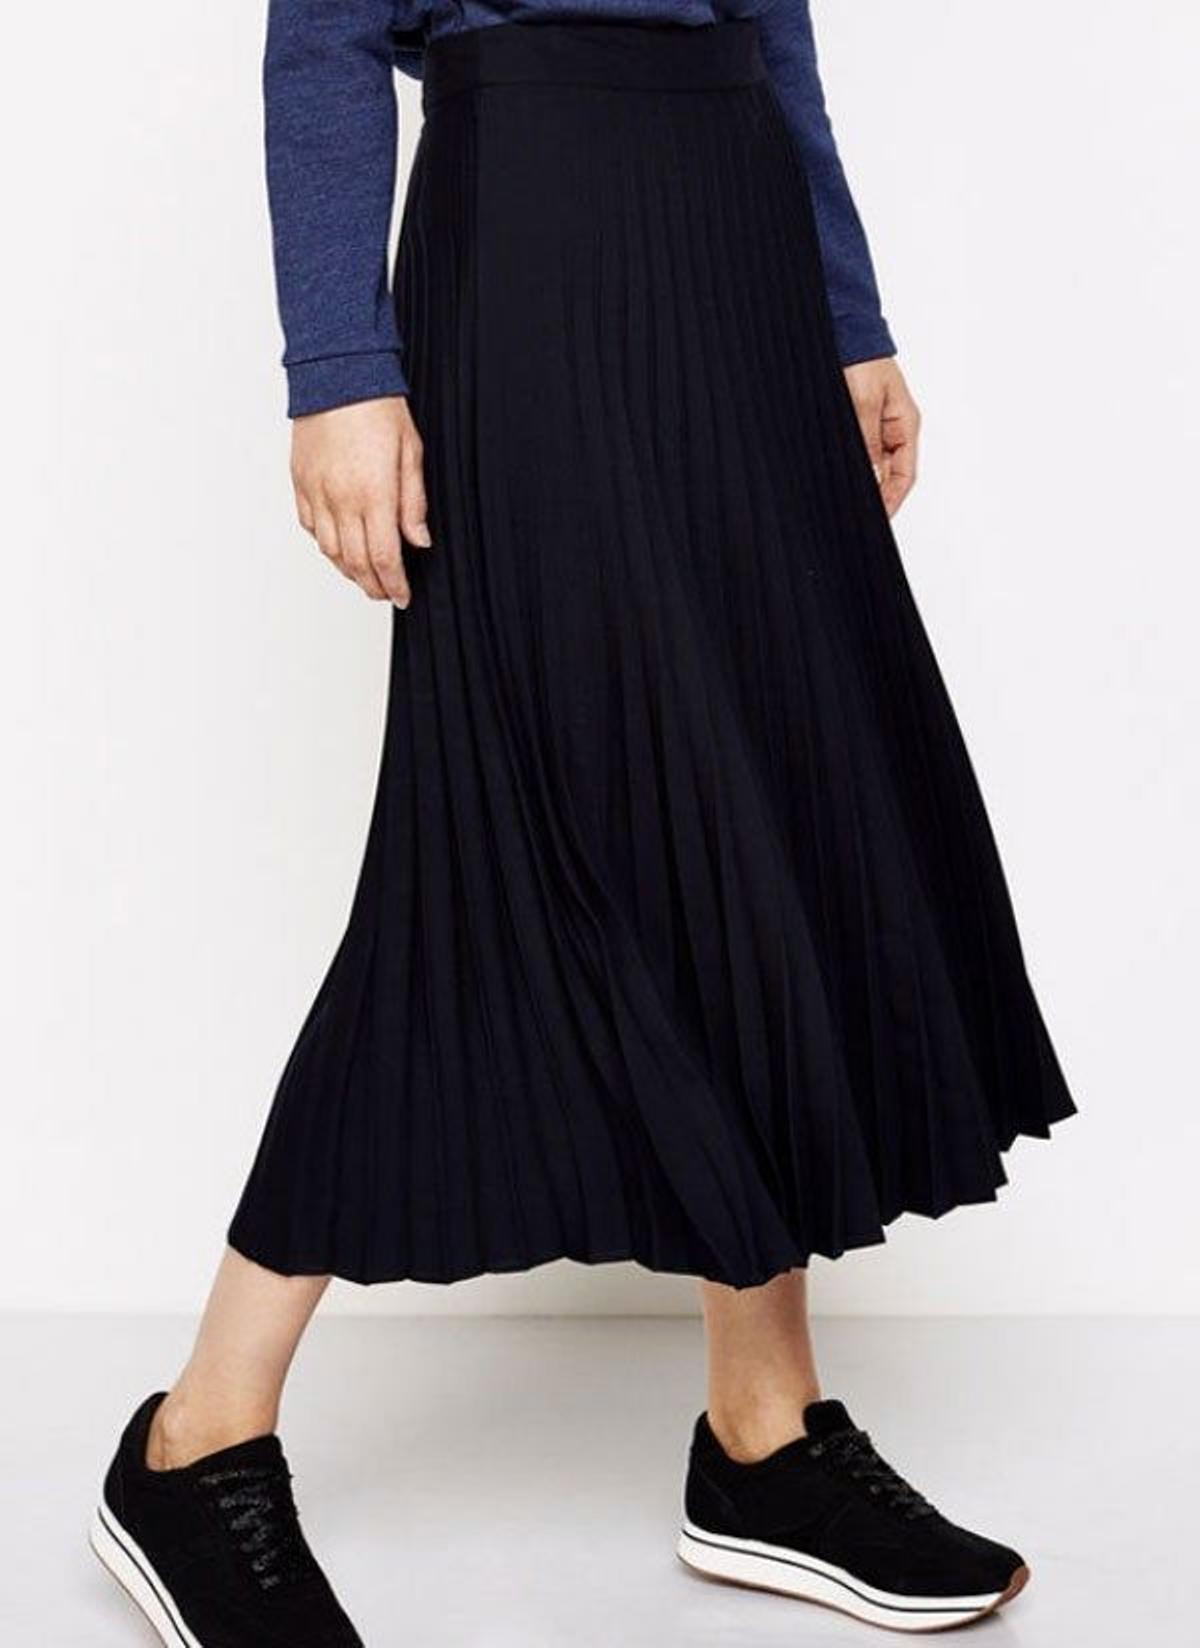 Falda azul navy plisada de Springfield. (Precio: 29, 99 euros)